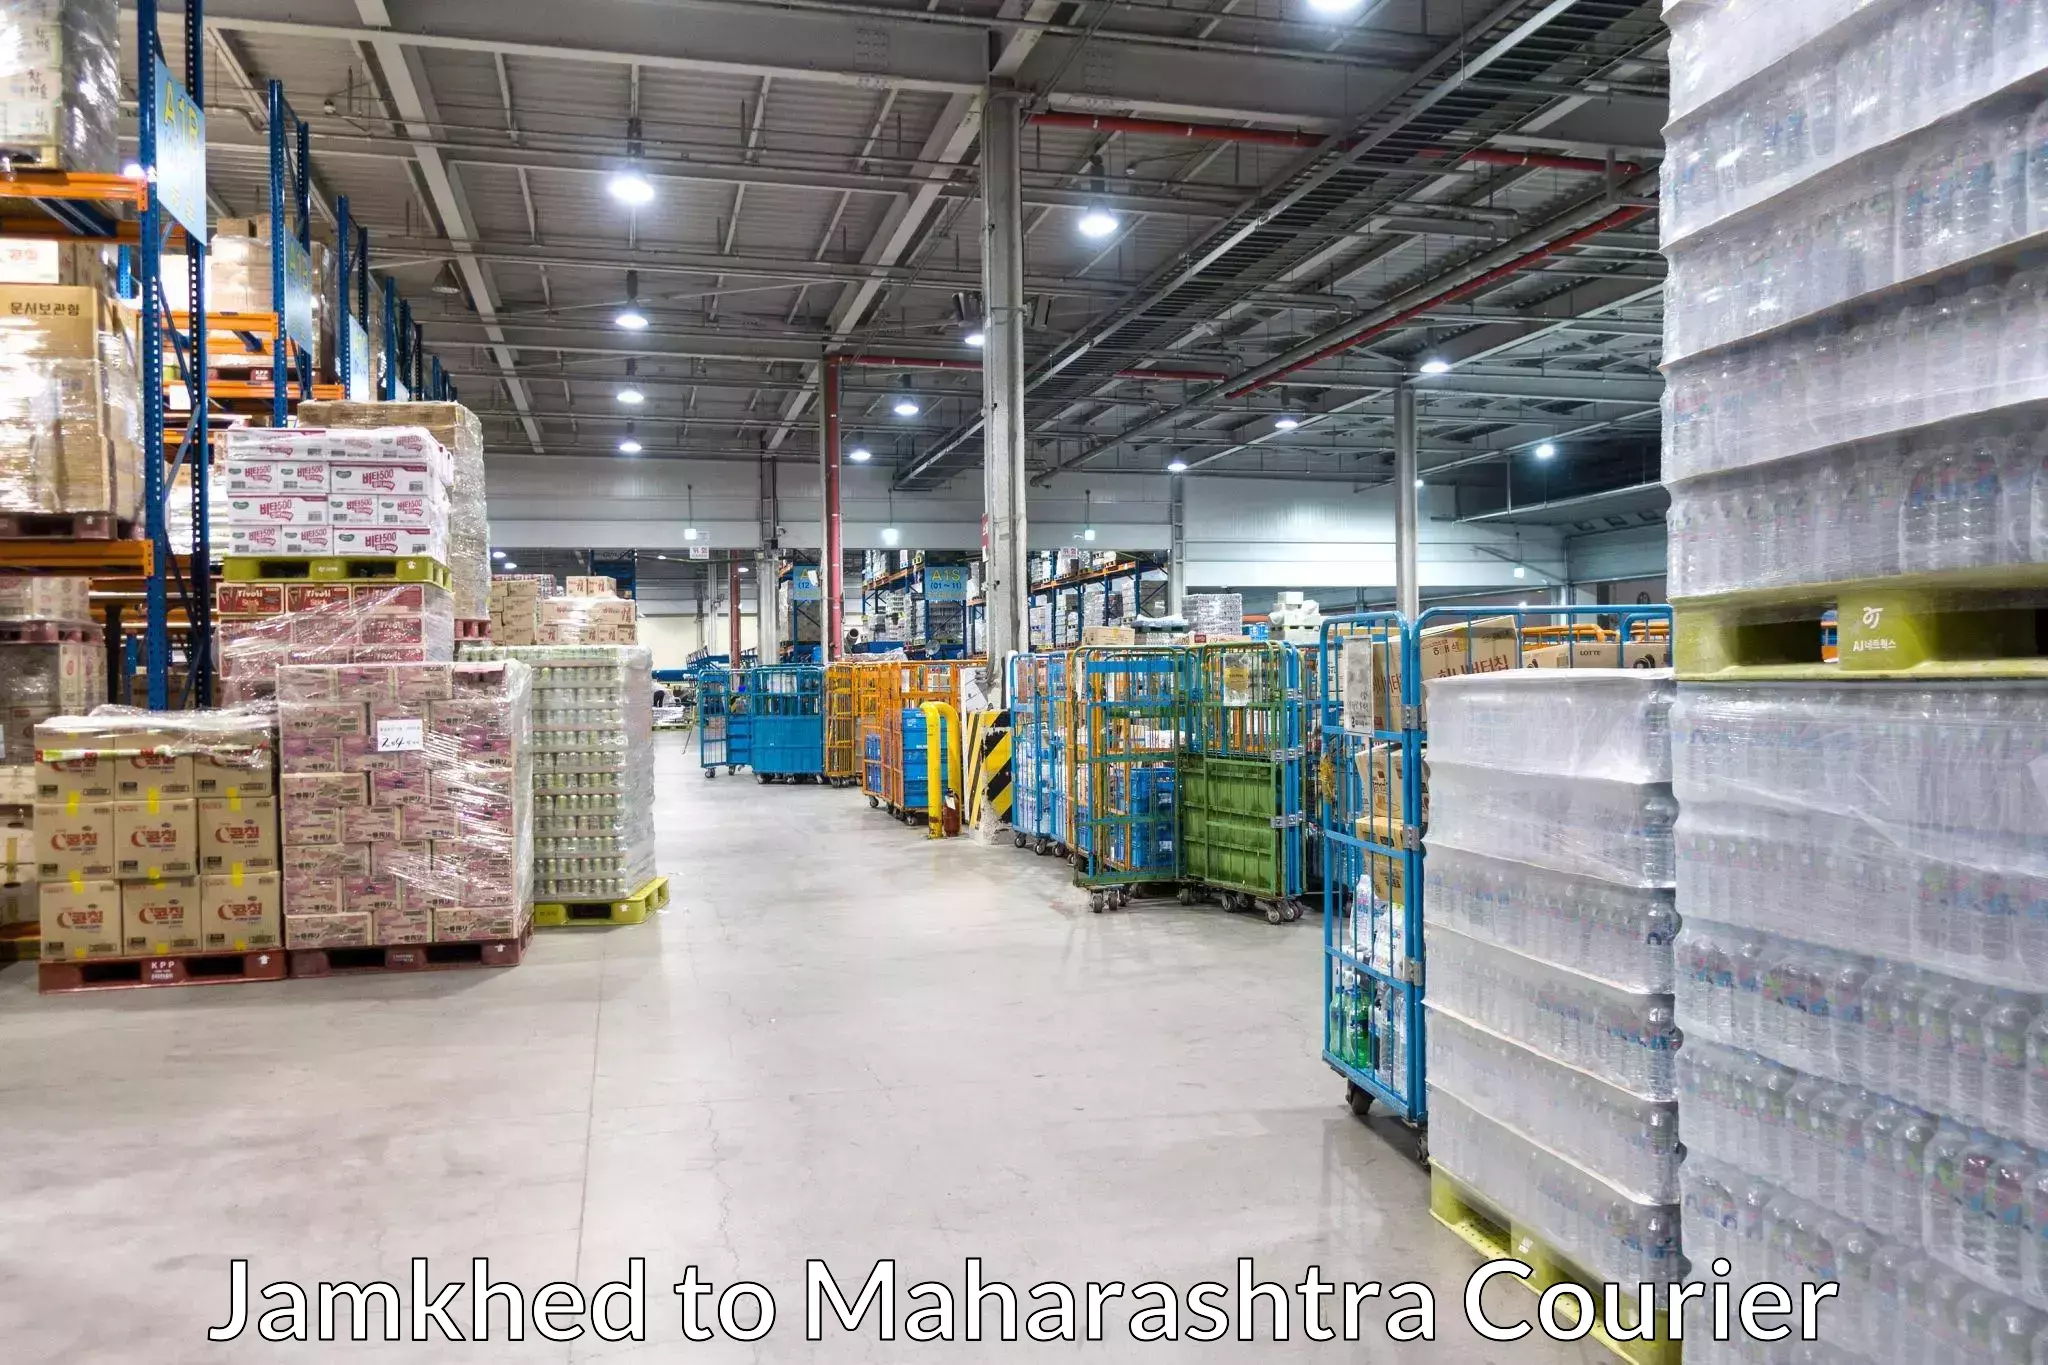 Quality courier partnerships Jamkhed to Maharashtra